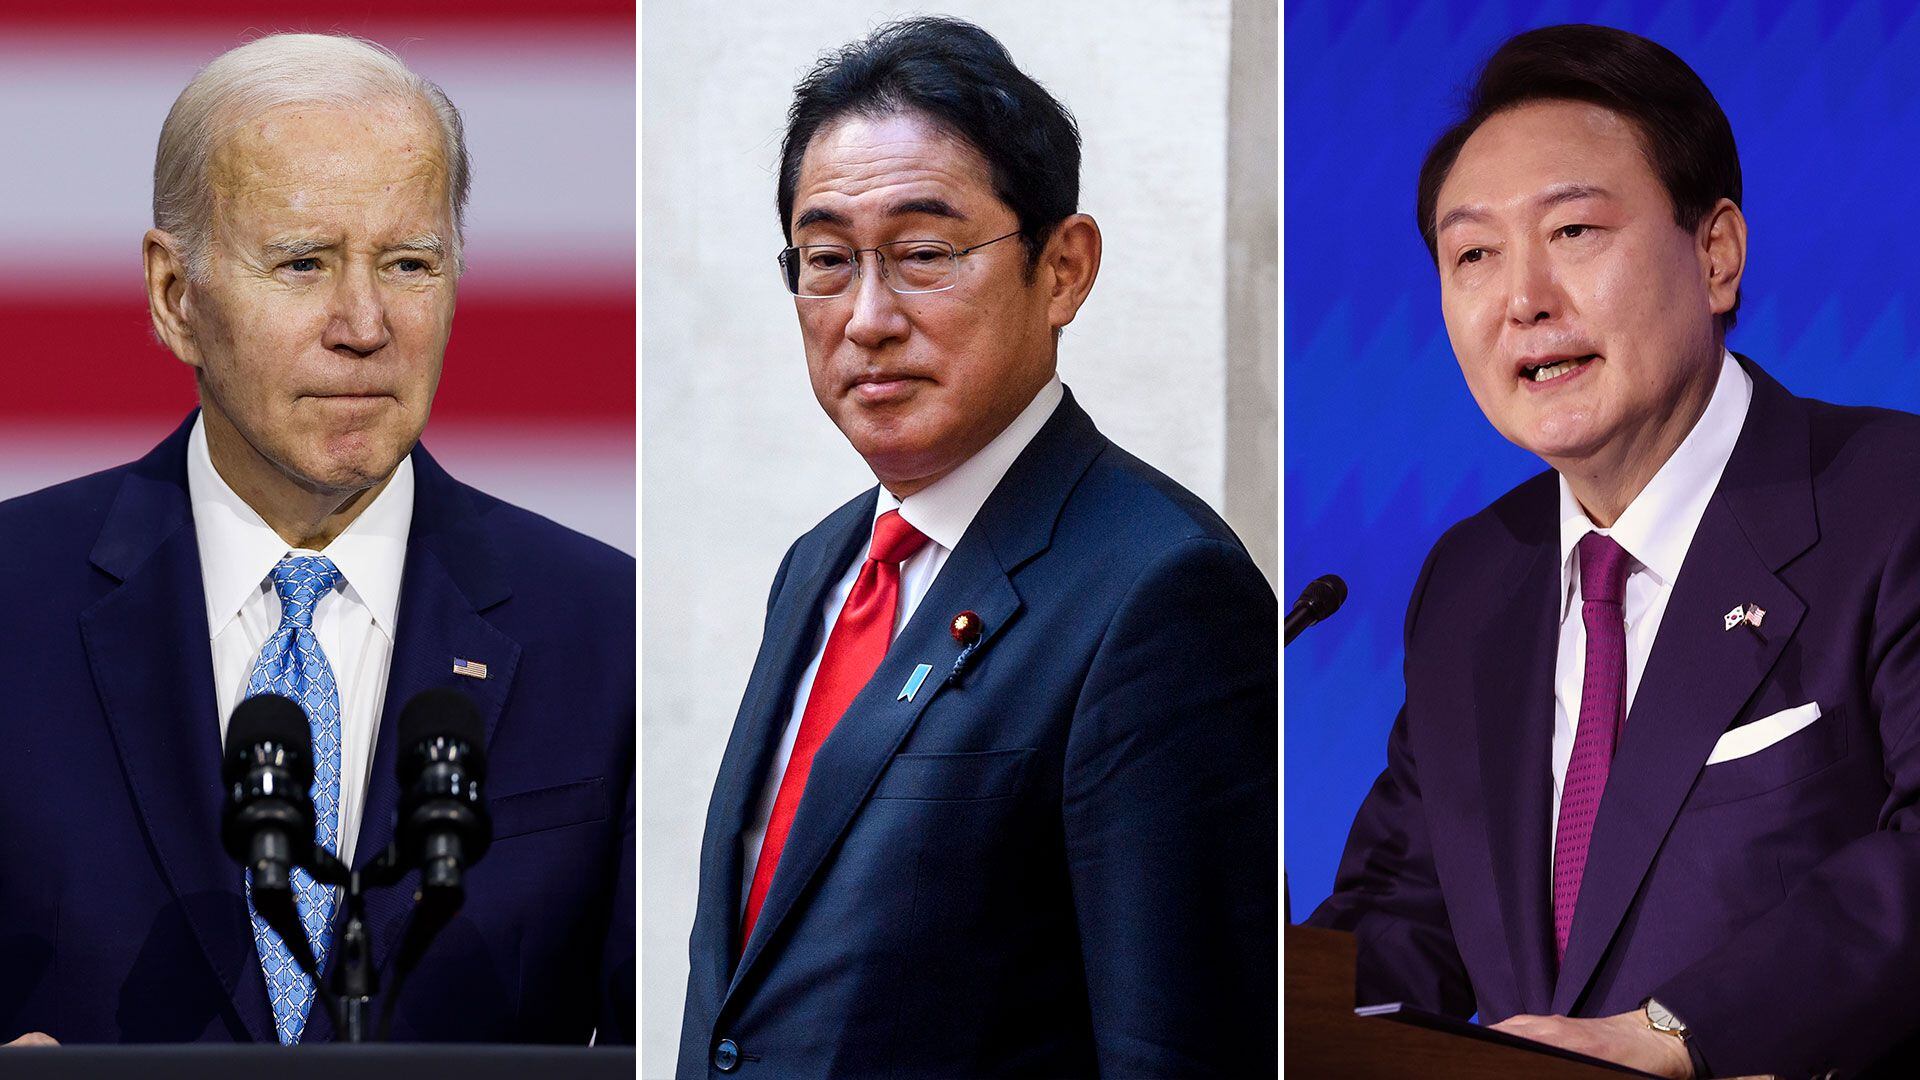 El presidente de Estados Unidos, Joe Biden, recibirá al primer ministro de Japón, Fumio Kishida, y al mandatario de Corea del Sur, Yoon Suk Yeol, el 18 de agosto.